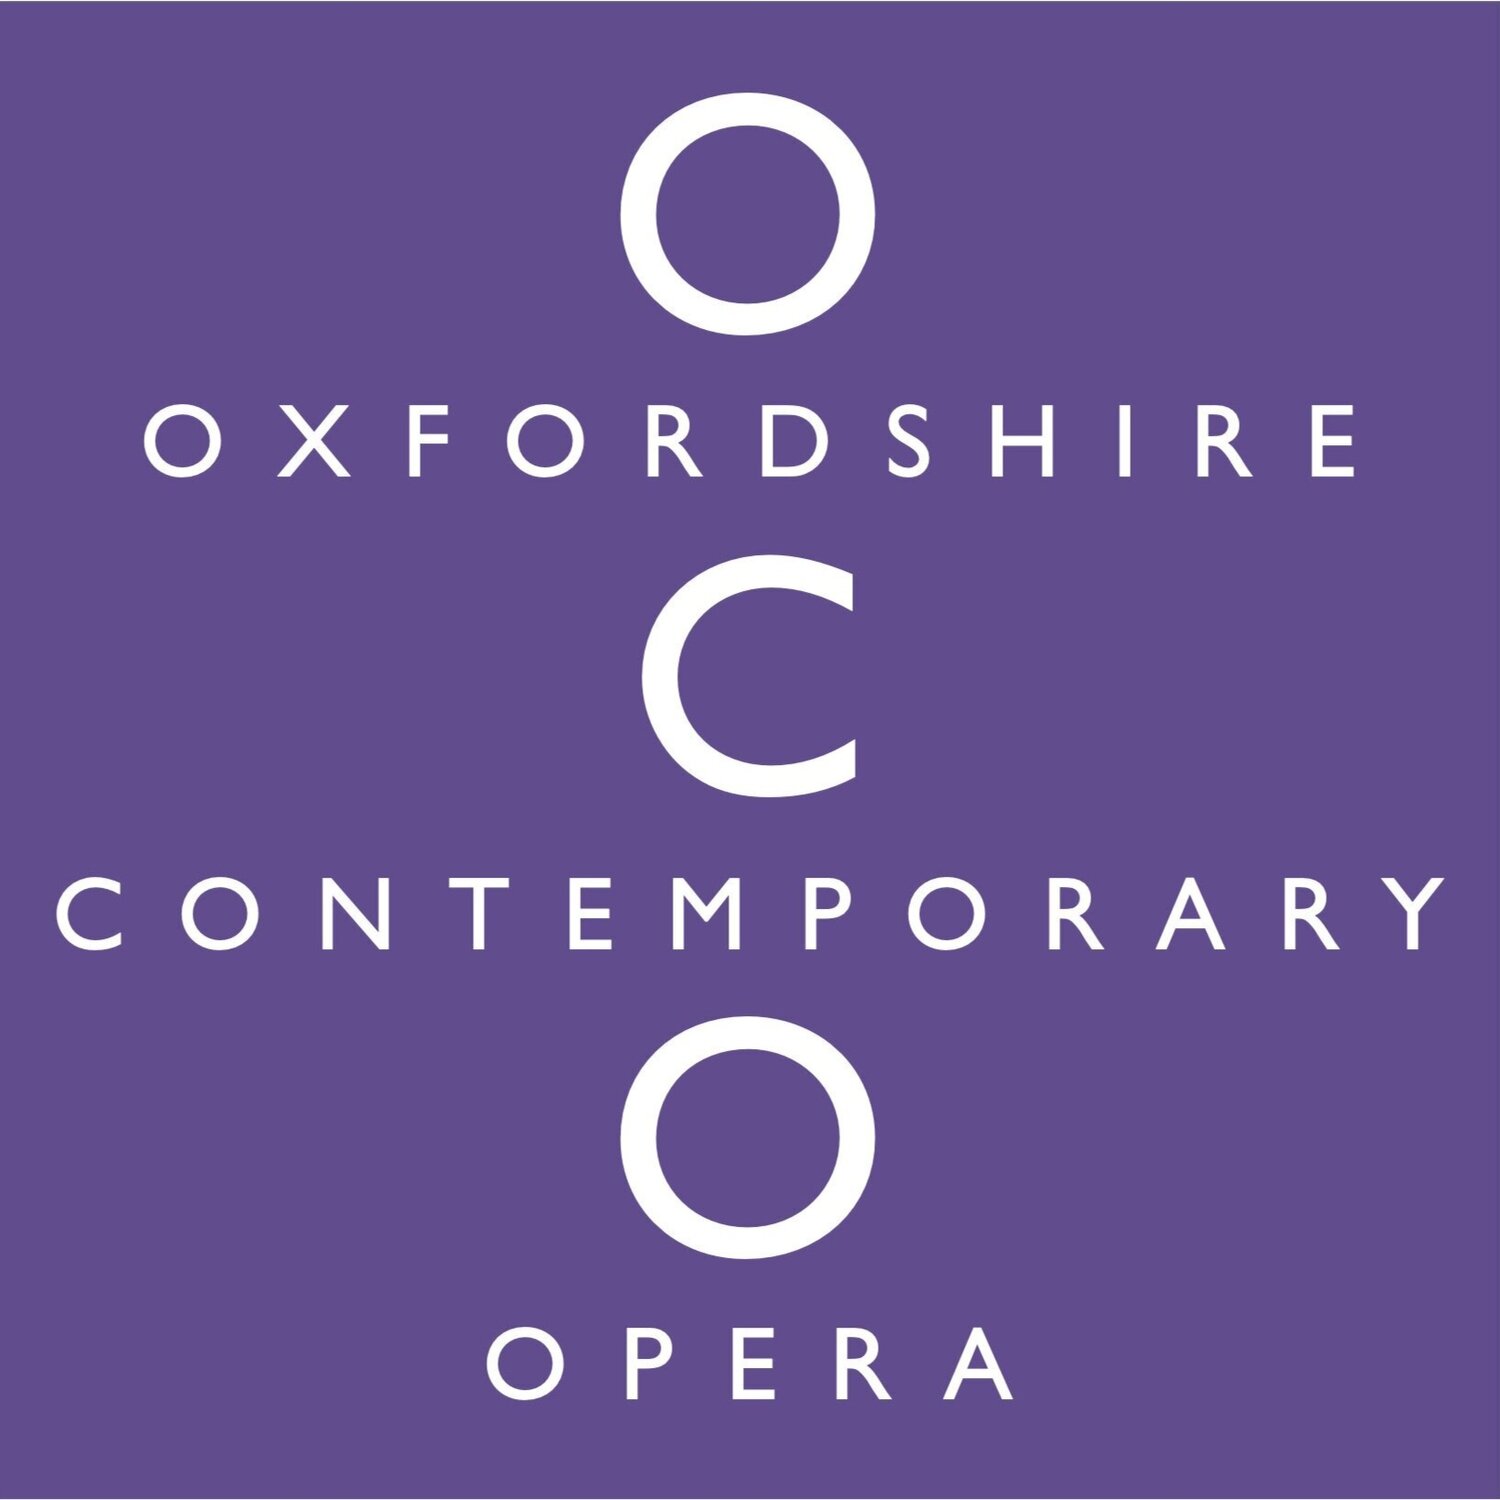 Oxfordshire Contemporary Opera